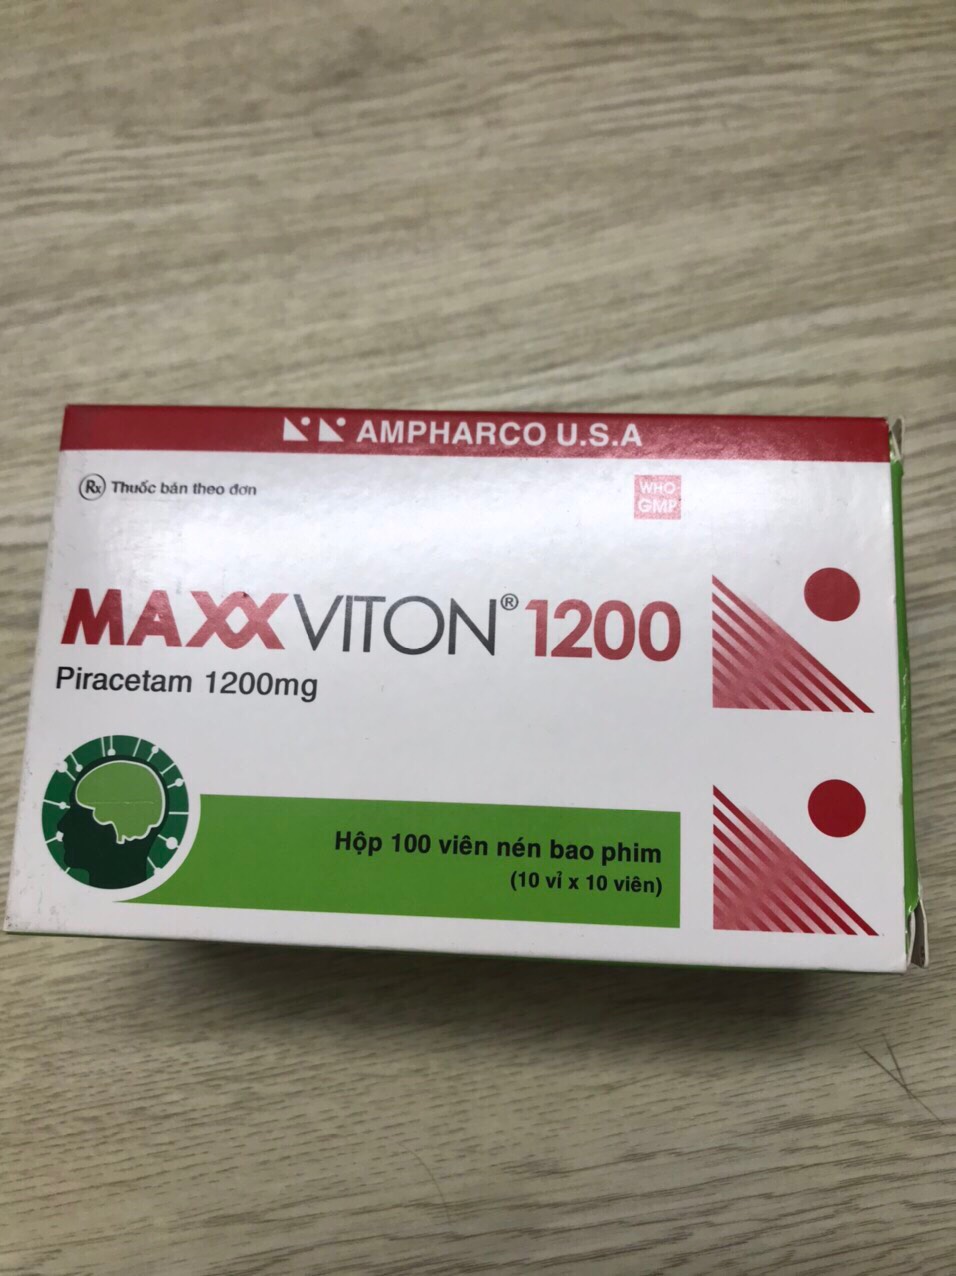 Maxx Viton 1200mg